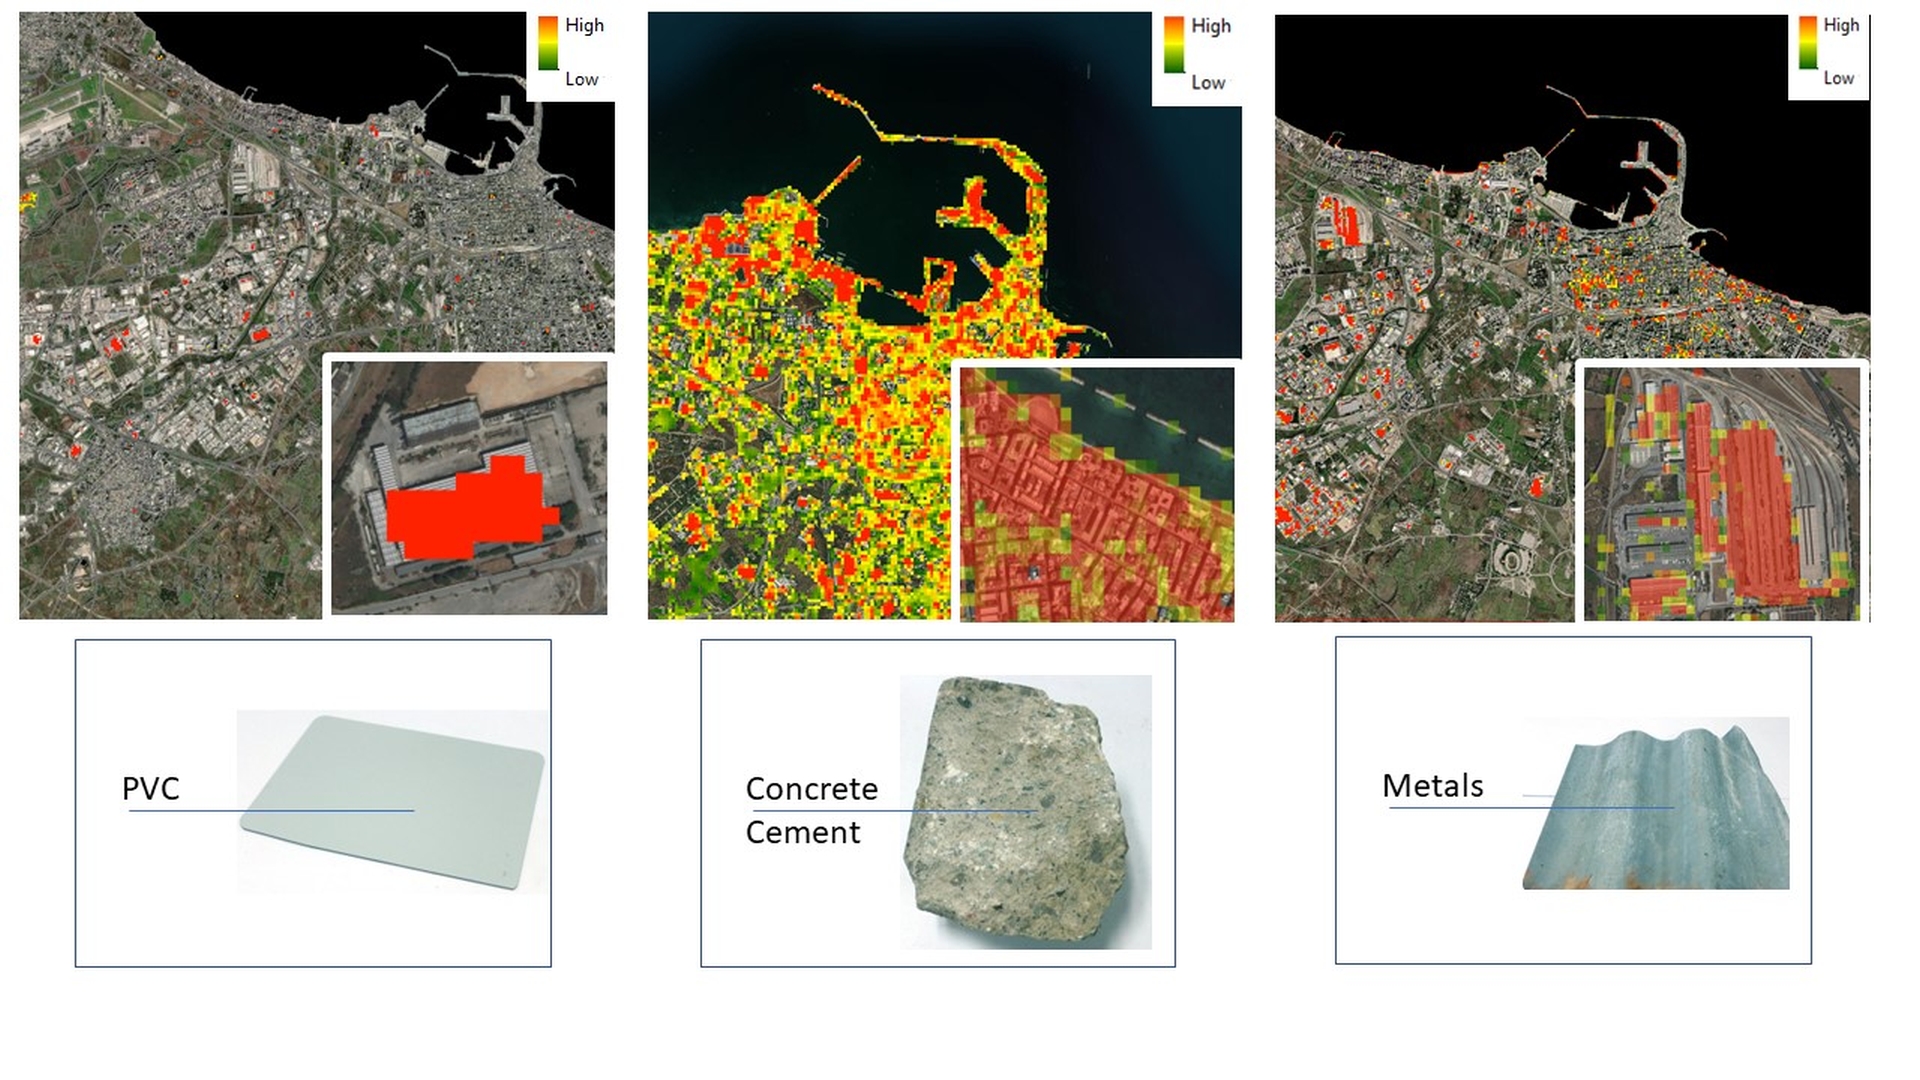 ASI - PRISMA per l’estrazione di Mappe di materiali per le coperture artificiali in aree urbane